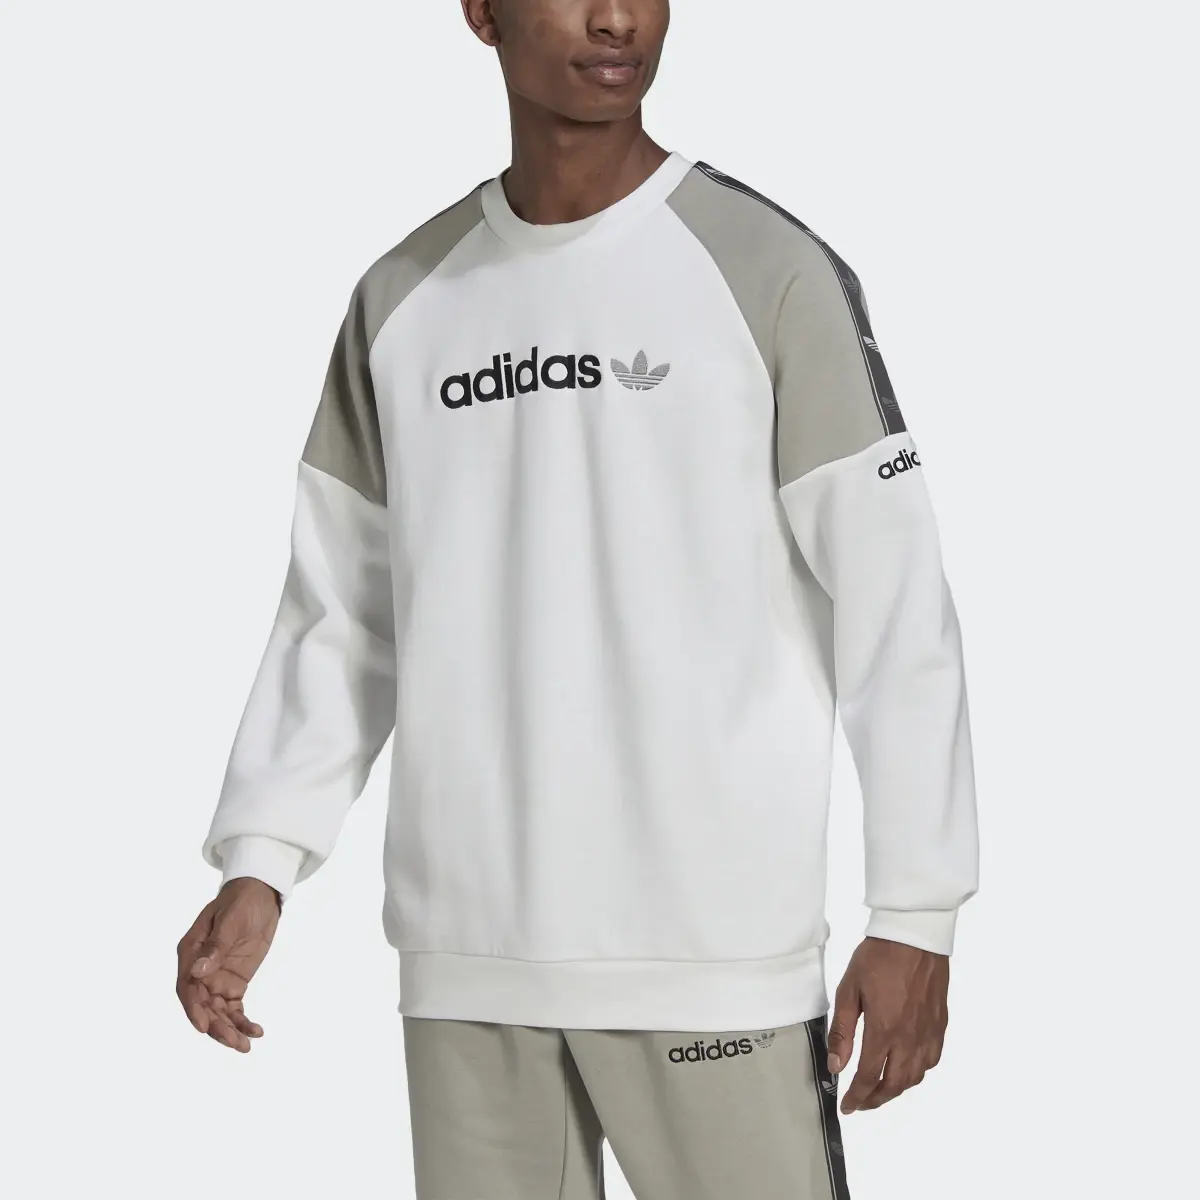 Adidas Tape Fleece Crew Sweatshirt. 1